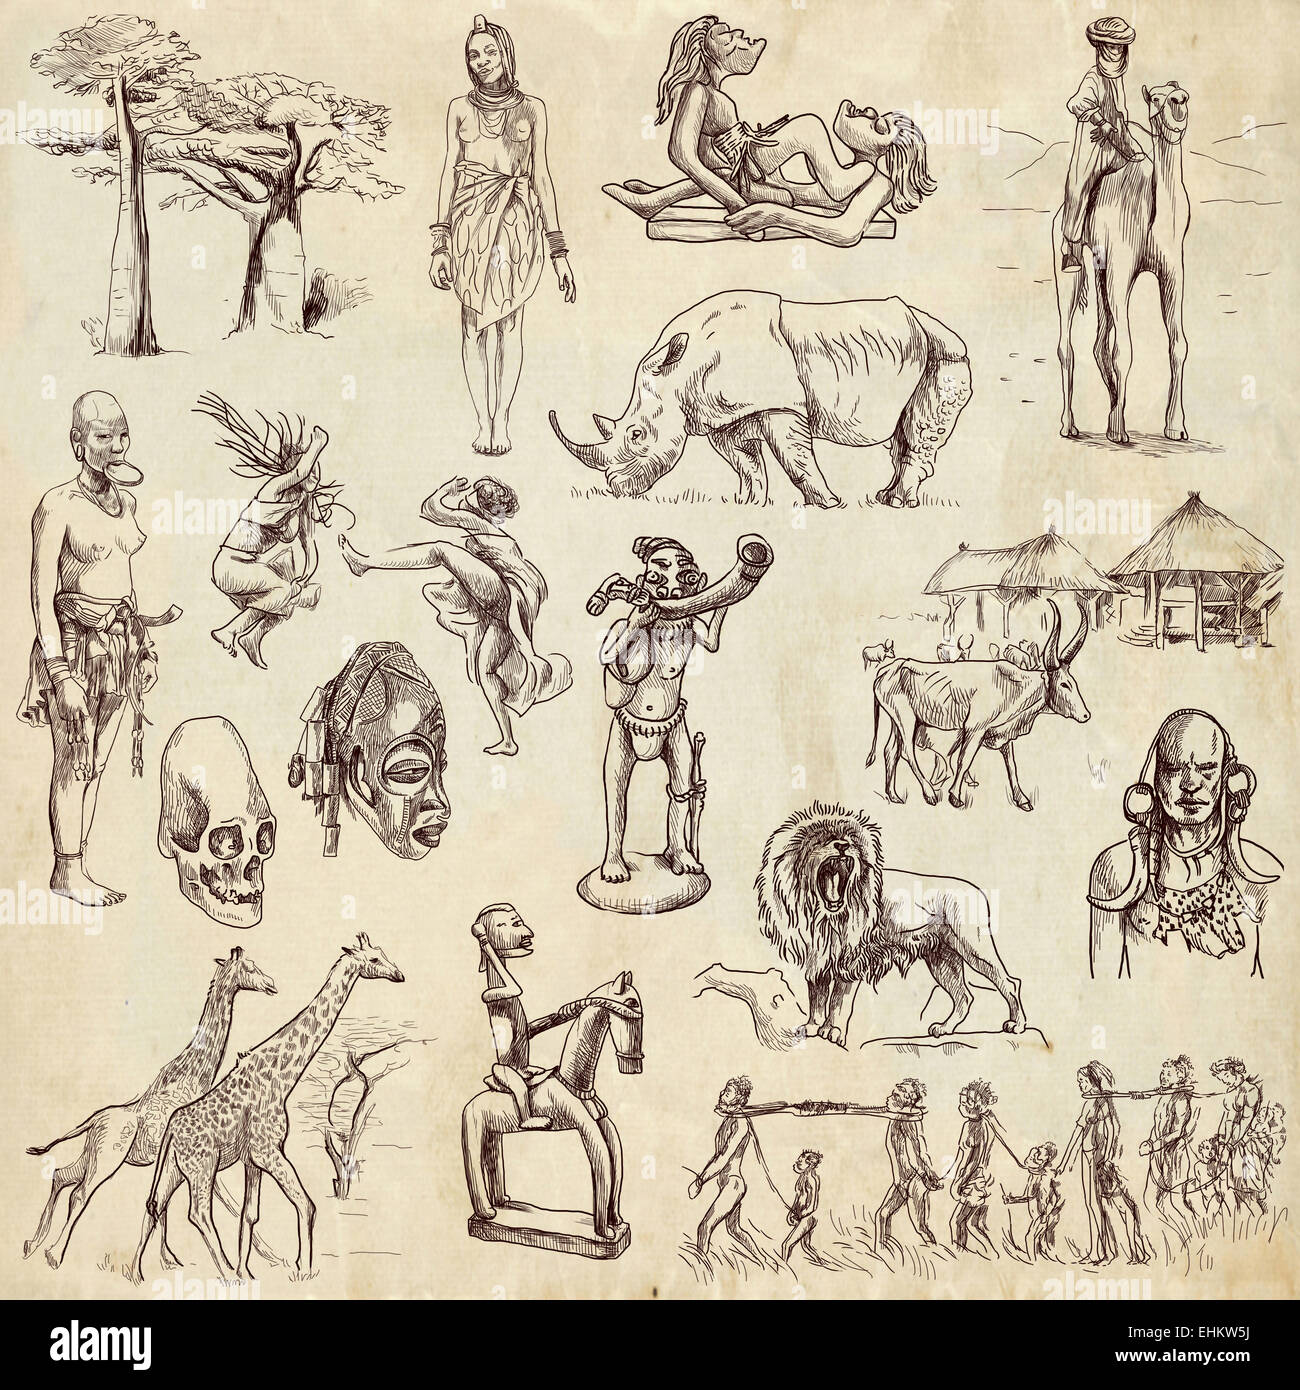 Série de voyages : AFRIQUE CENTRALE - Collection d'un hand drawn illustrations. Description : Grand hand drawn illustrations, ori Banque D'Images